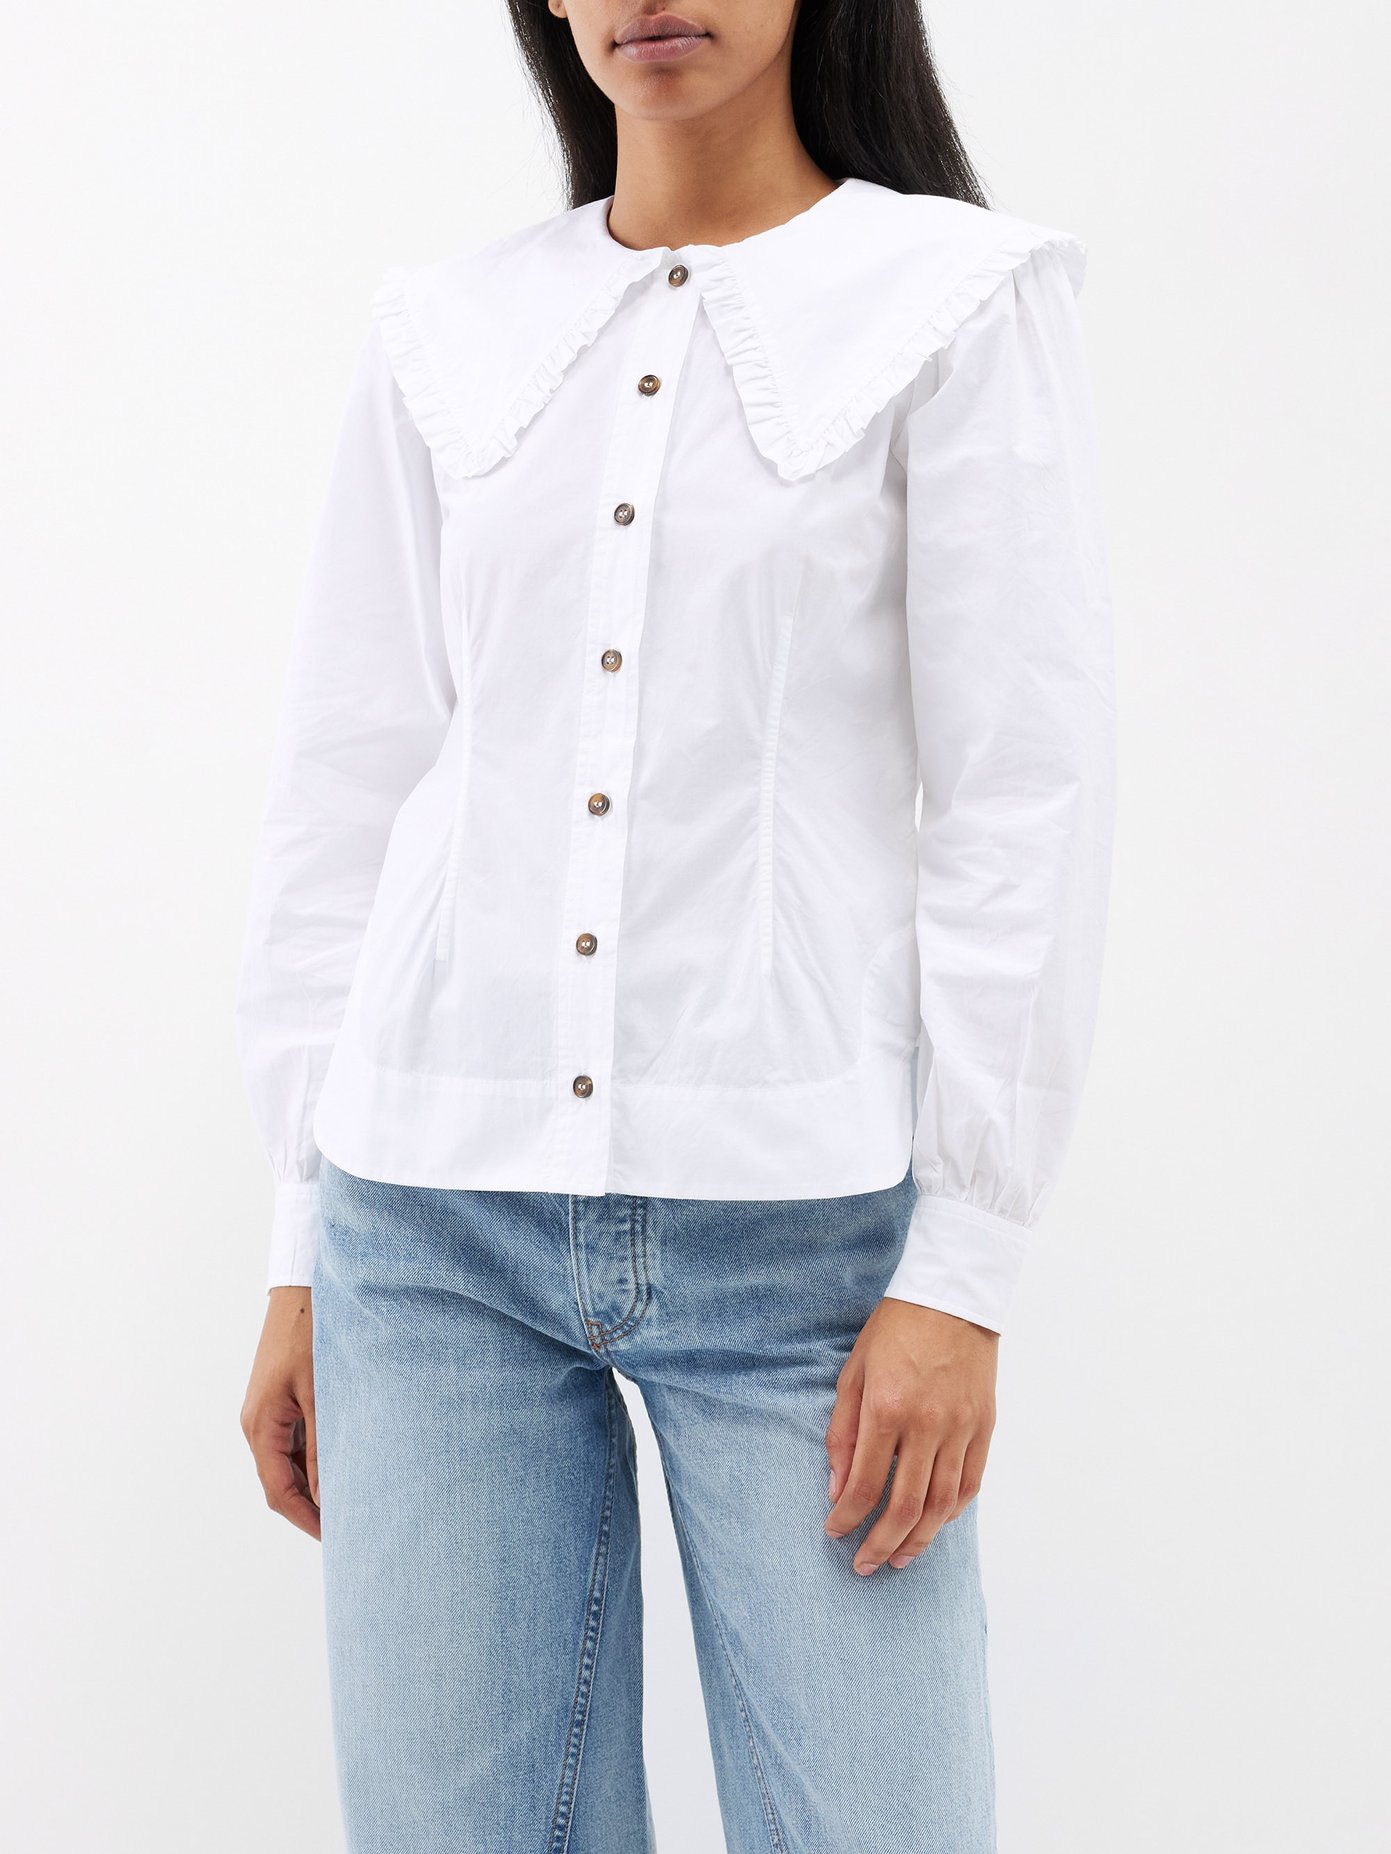 white shirt ruffle collar